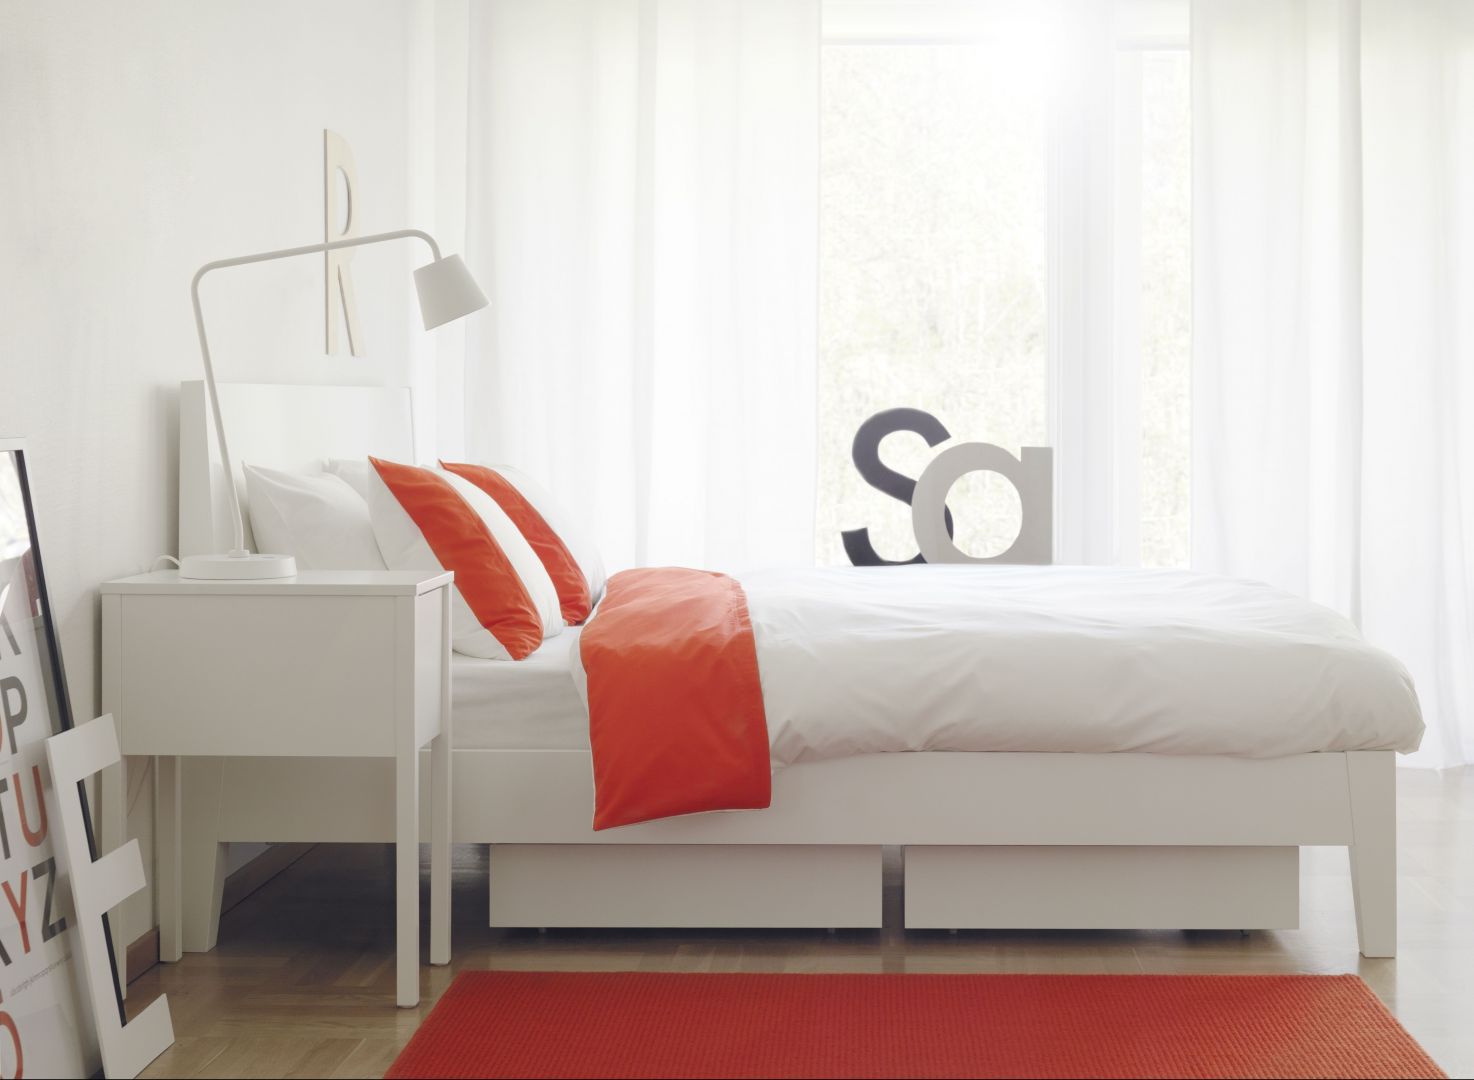 Łóżko Nordi, klasyczne, białe, odpowiednie również do pokoju młodzieżowego
Fot. IKEA